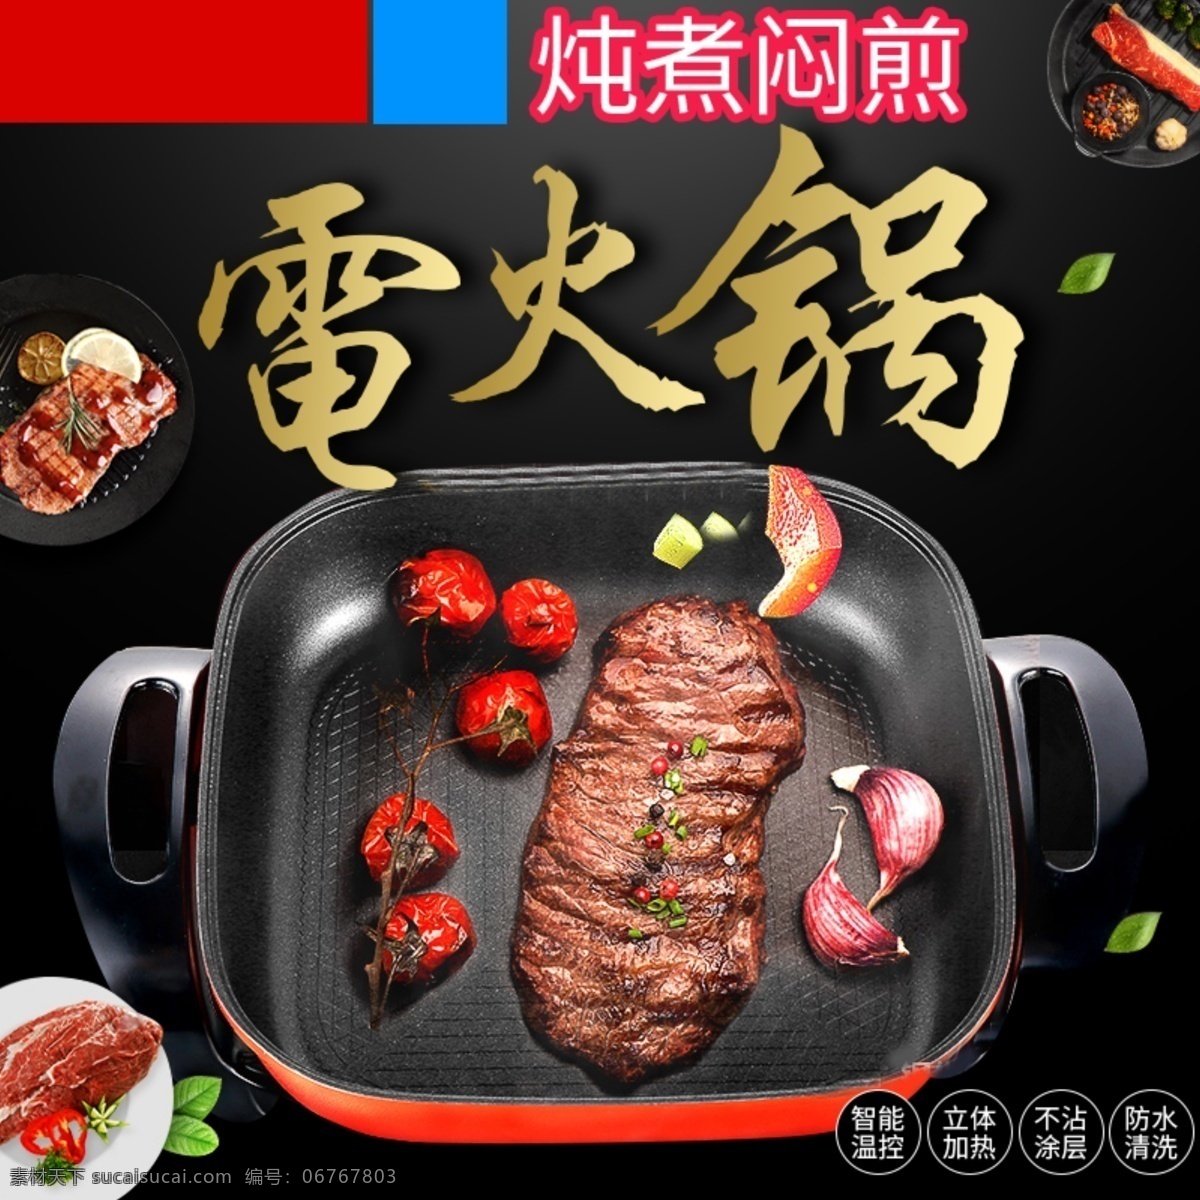 电火锅 主 图 主图设计 字体设计 电商设计 广告 黑色背景 锅素材 食物素材